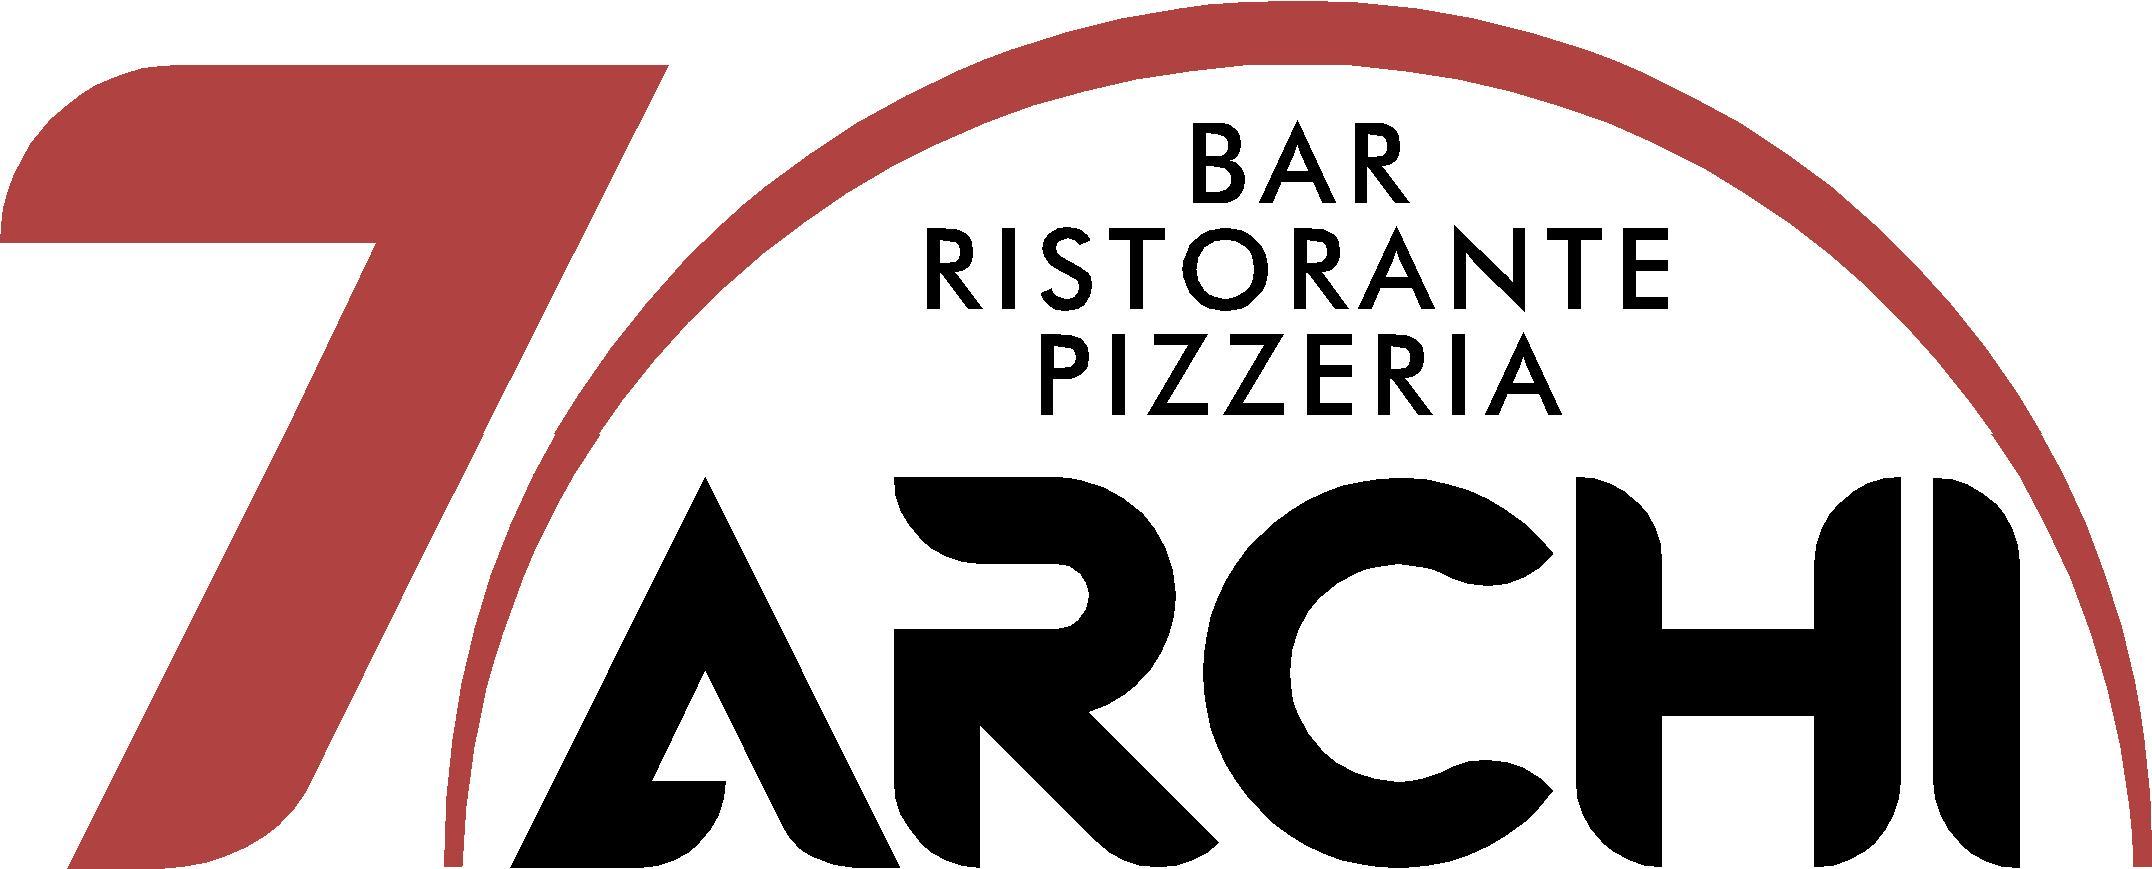 Ristorante Pizzeria 7 Archi